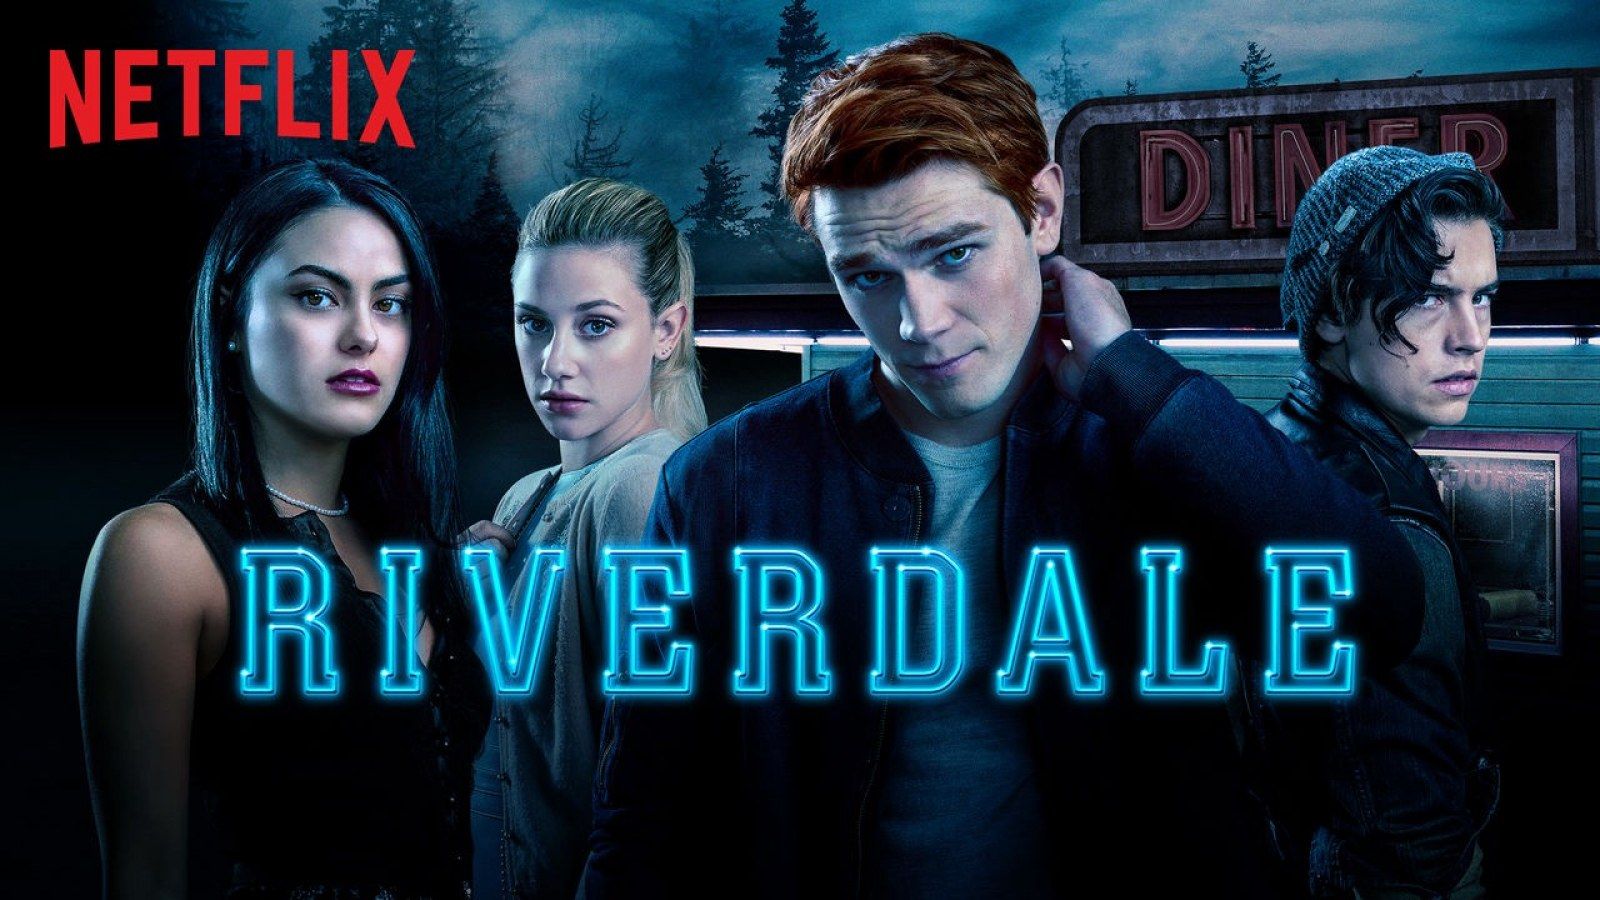 Riverdale' Season 4 Netflix Release Date: When is the New Season on Netflix?